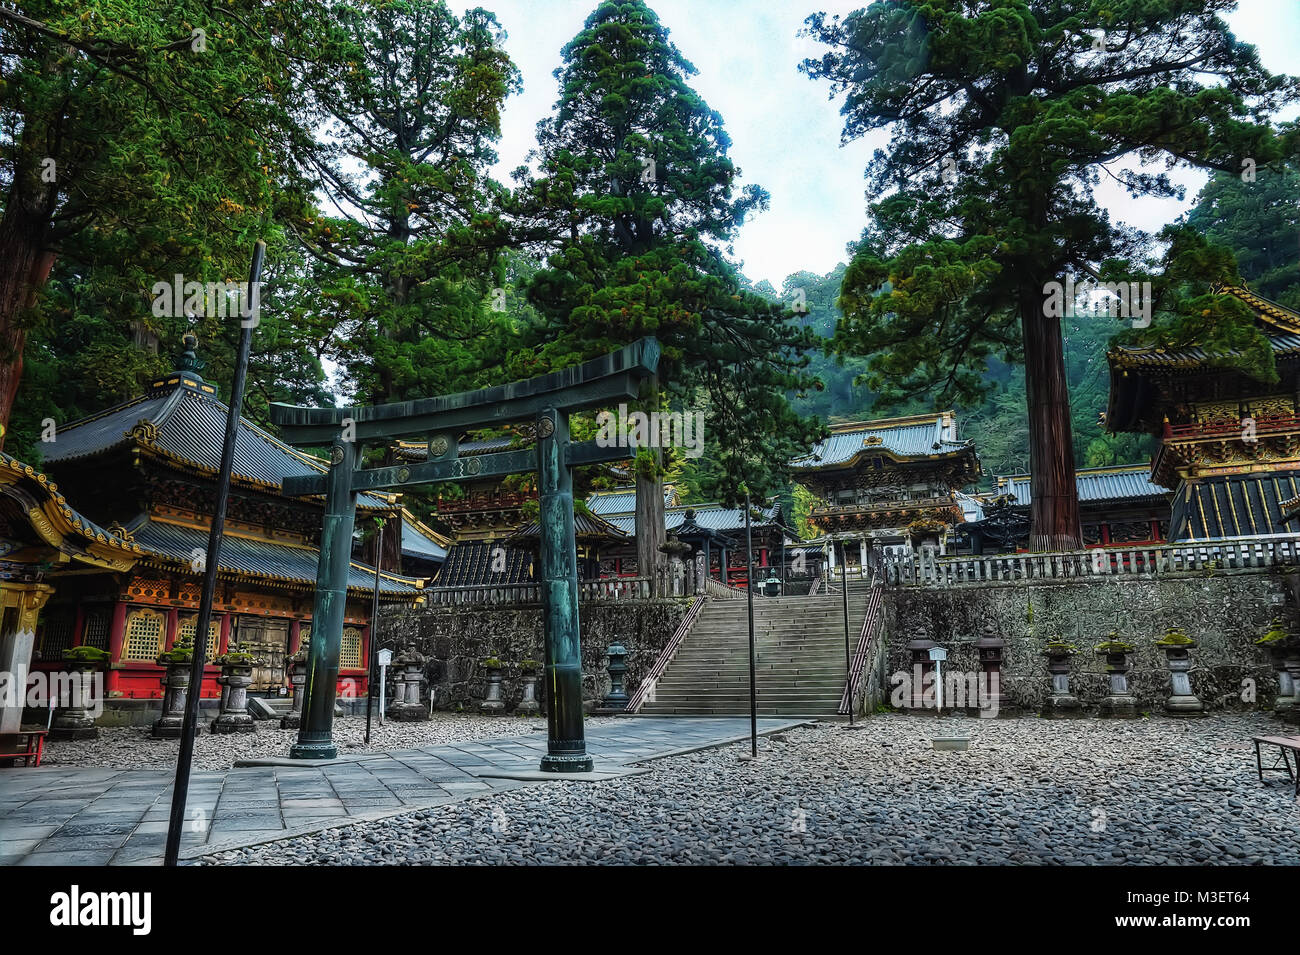 Taiyu-in Temple Nikko taken in 2015 Stock Photo